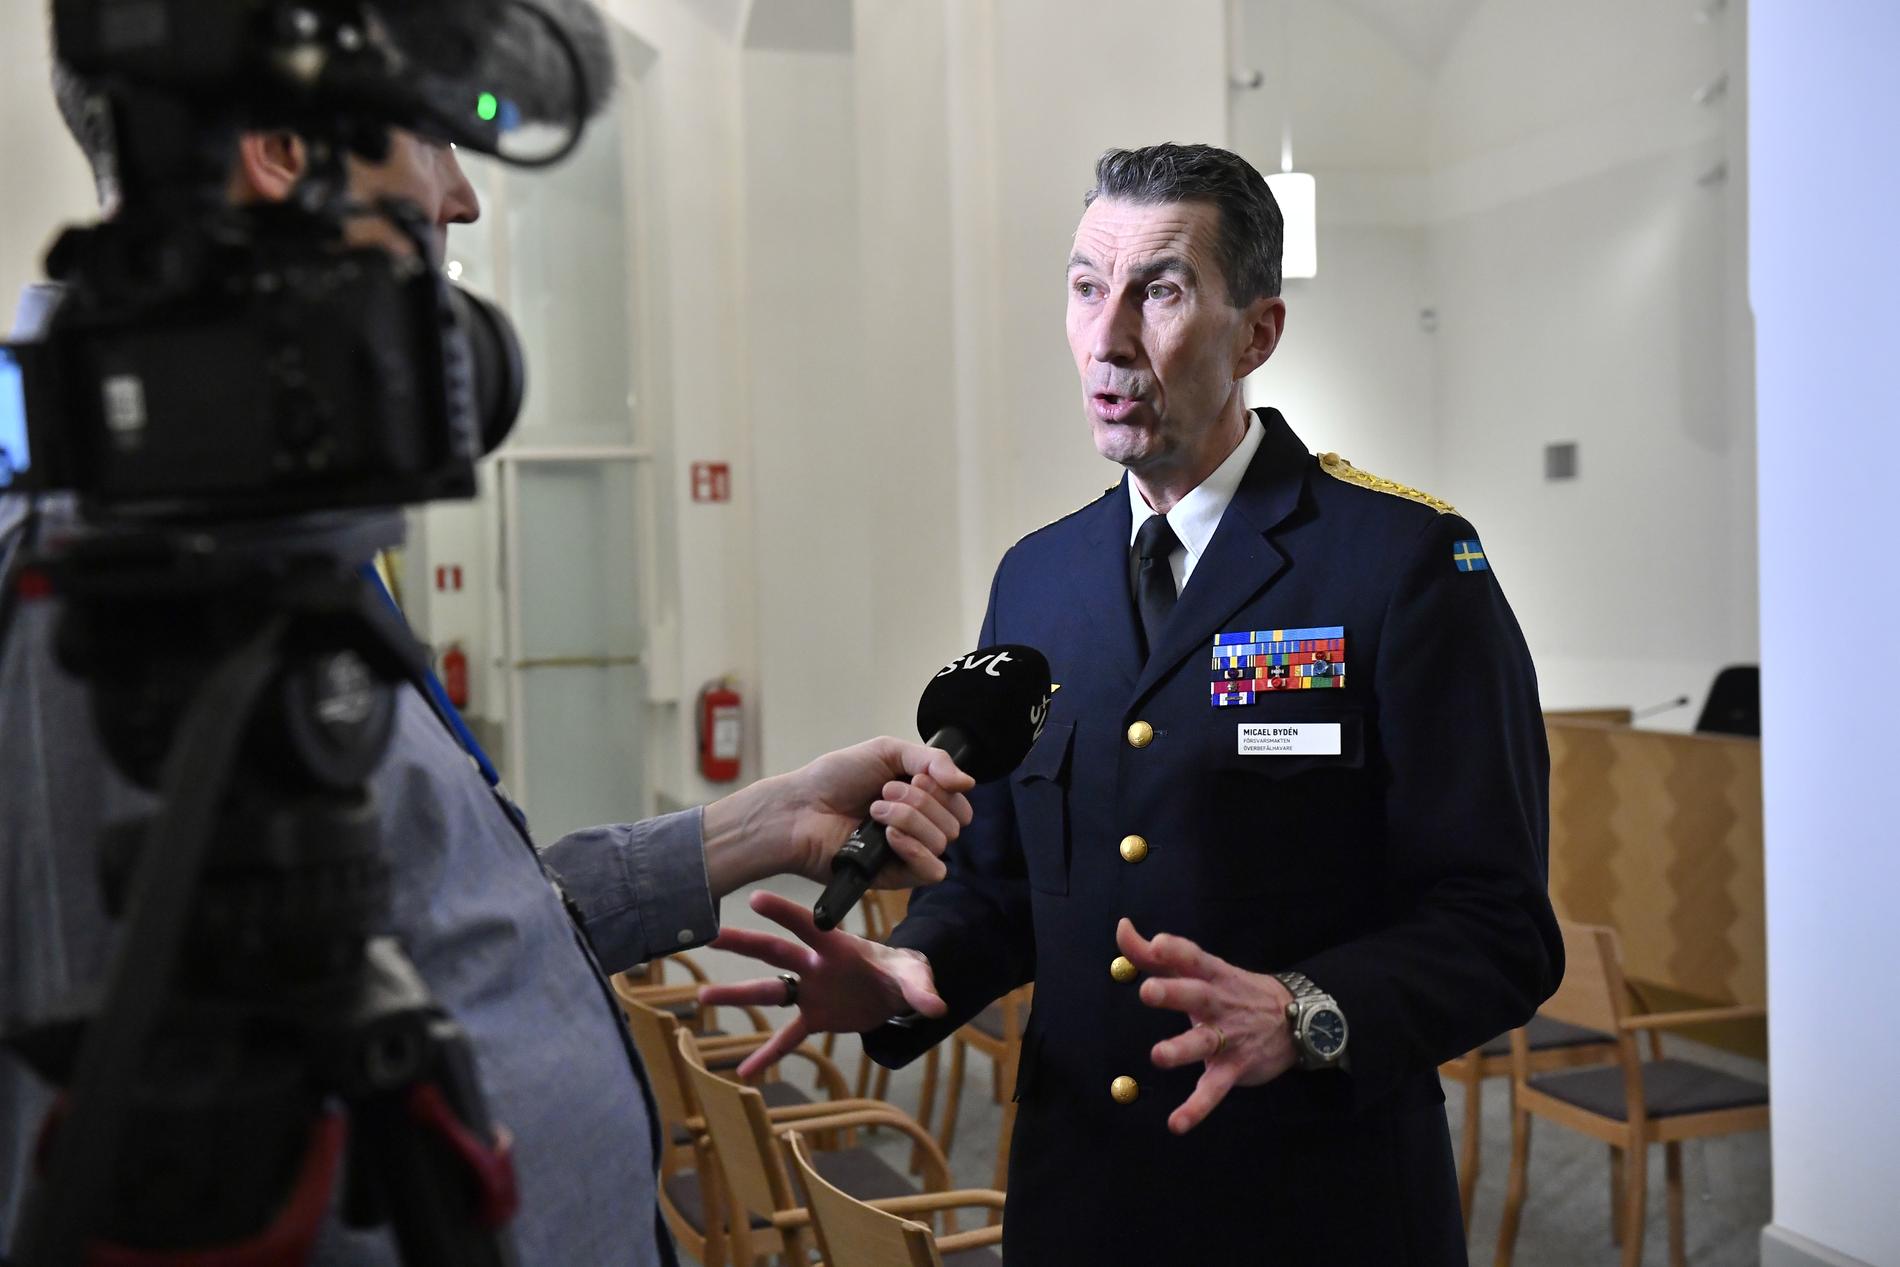 Överbefälhavare general Micael Bydén efter försvarsutskottets sammanträde i Riksdagen.